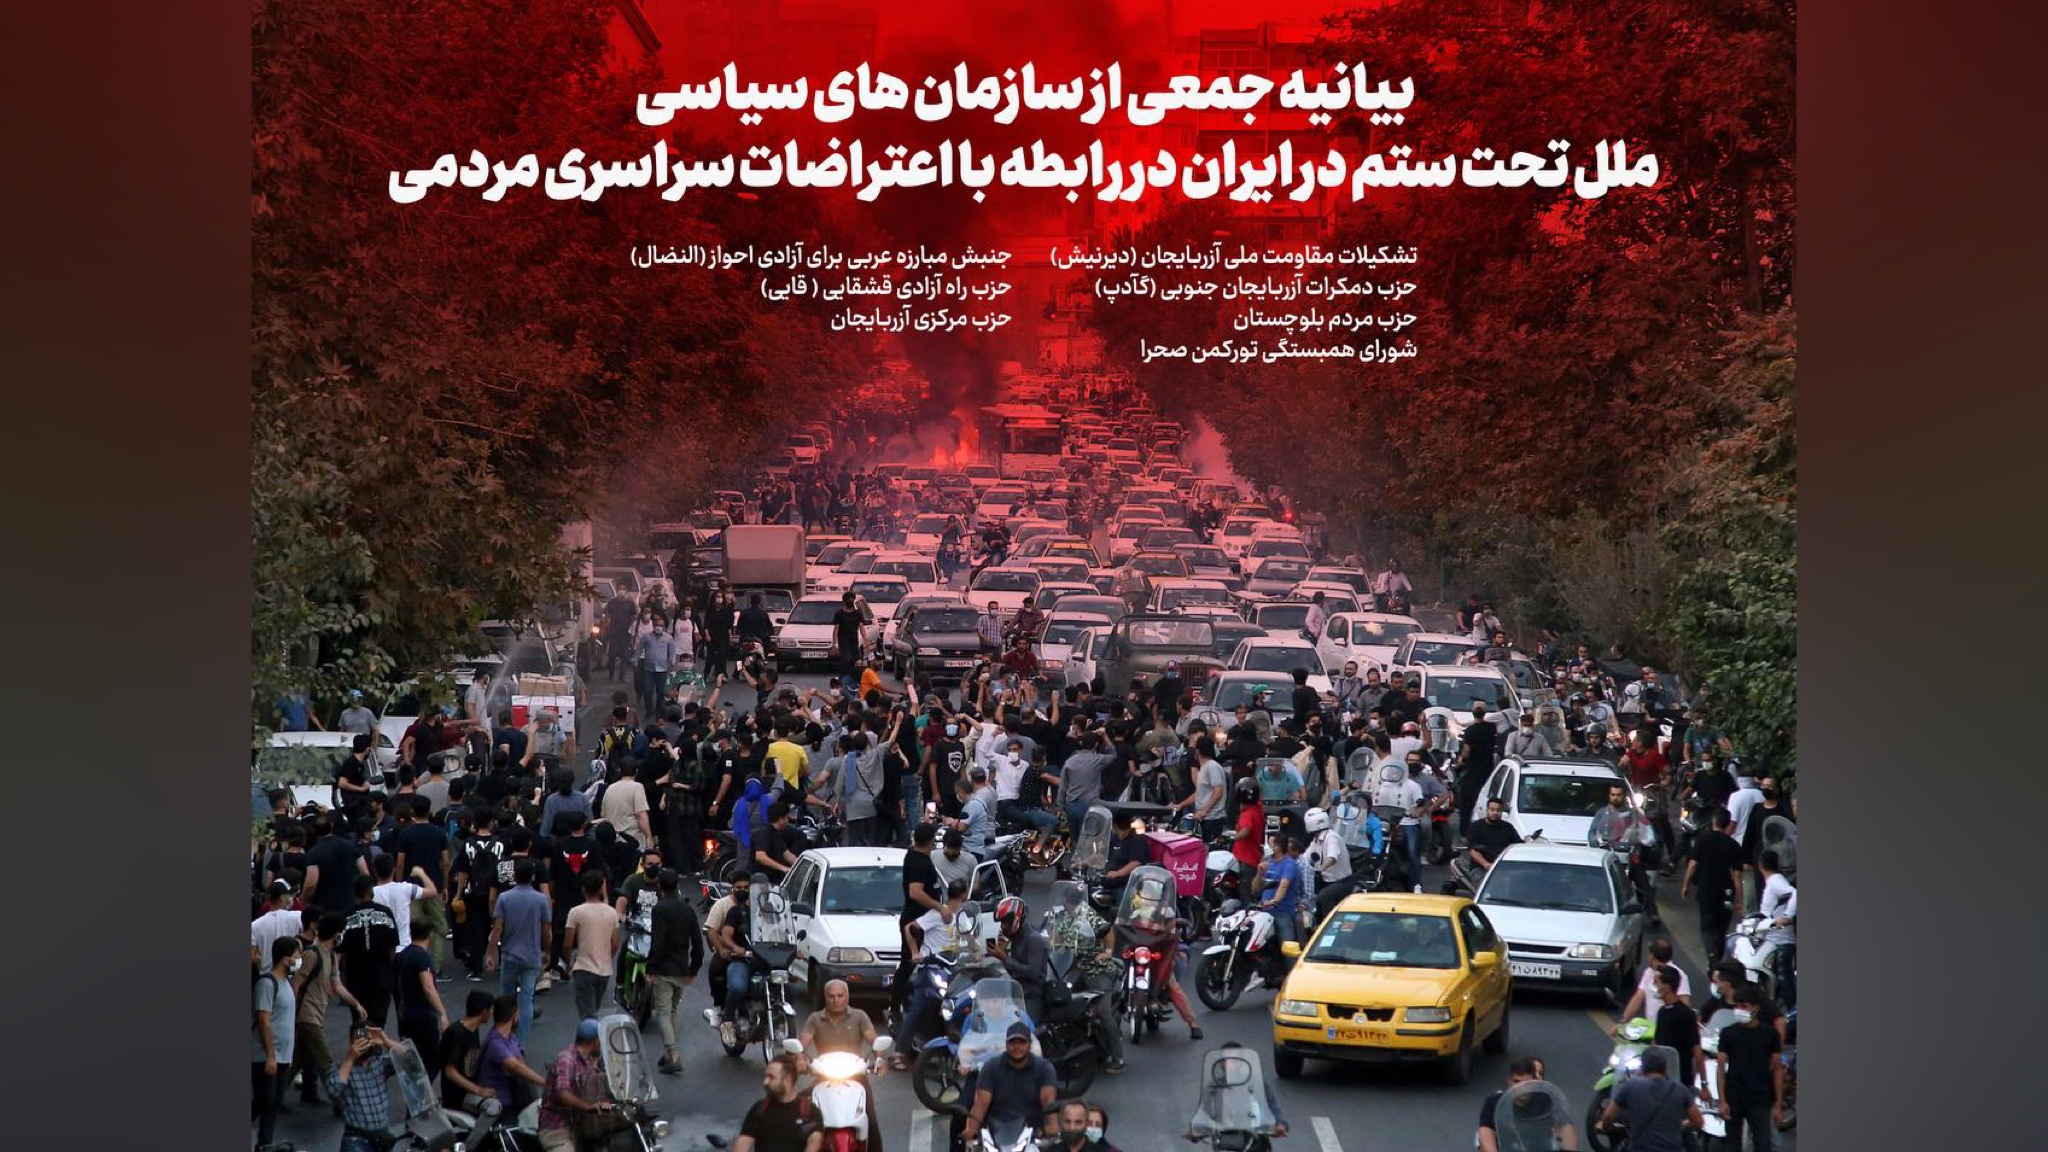 بیانیه جمعی از سازمان های سیاسی ملل تحت ستم در ایران در رابطه با اعتراضات سراسری مردمی